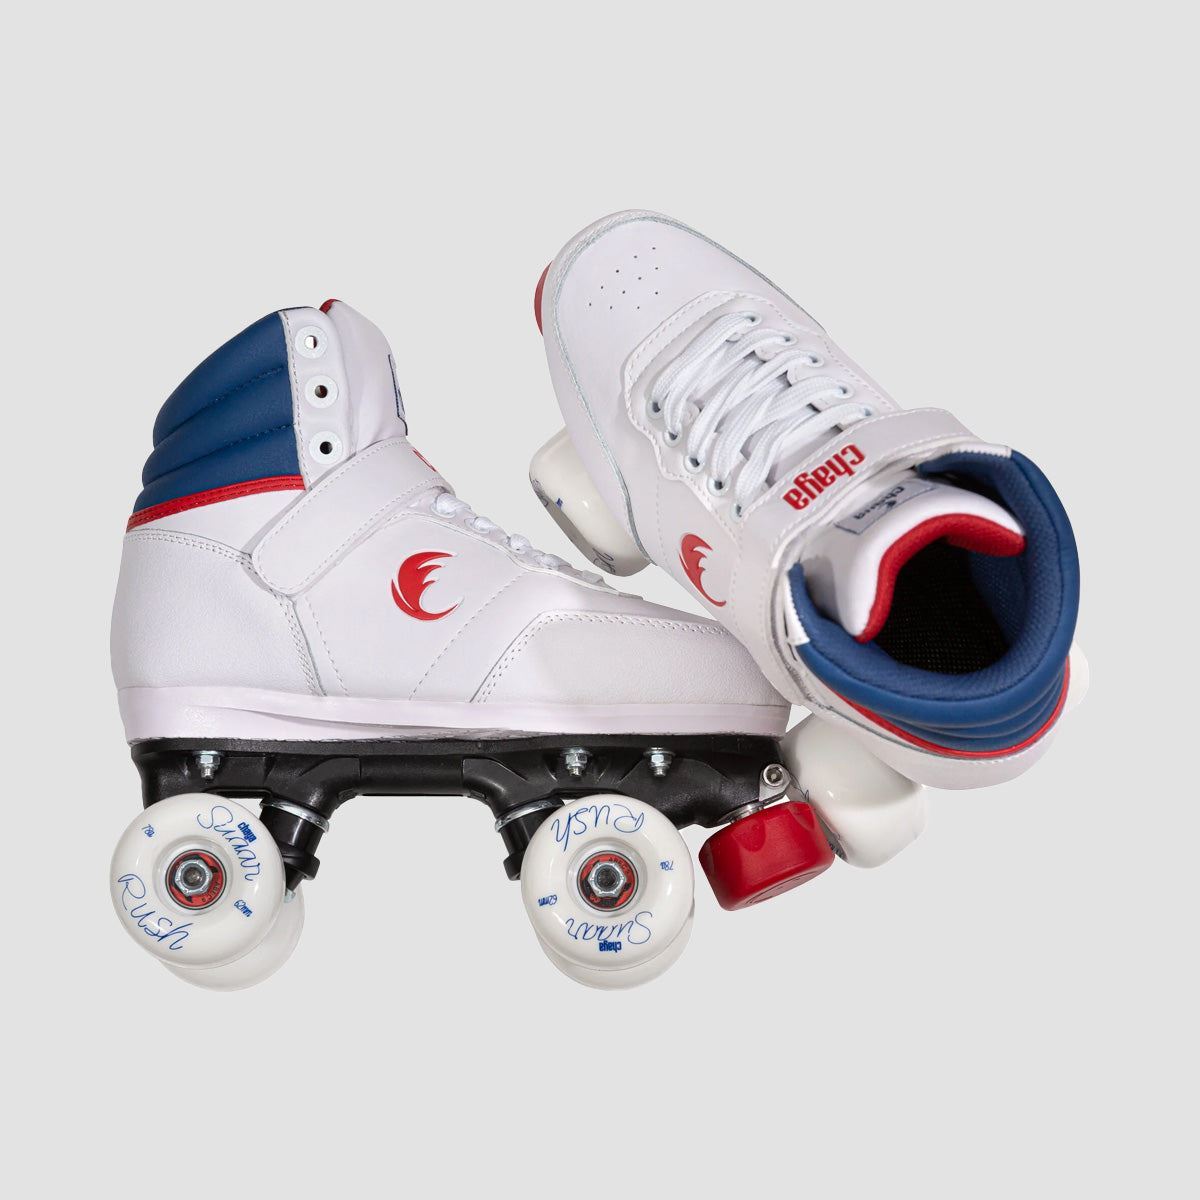 Chaya Park Jump 2.0 Quad Skates White